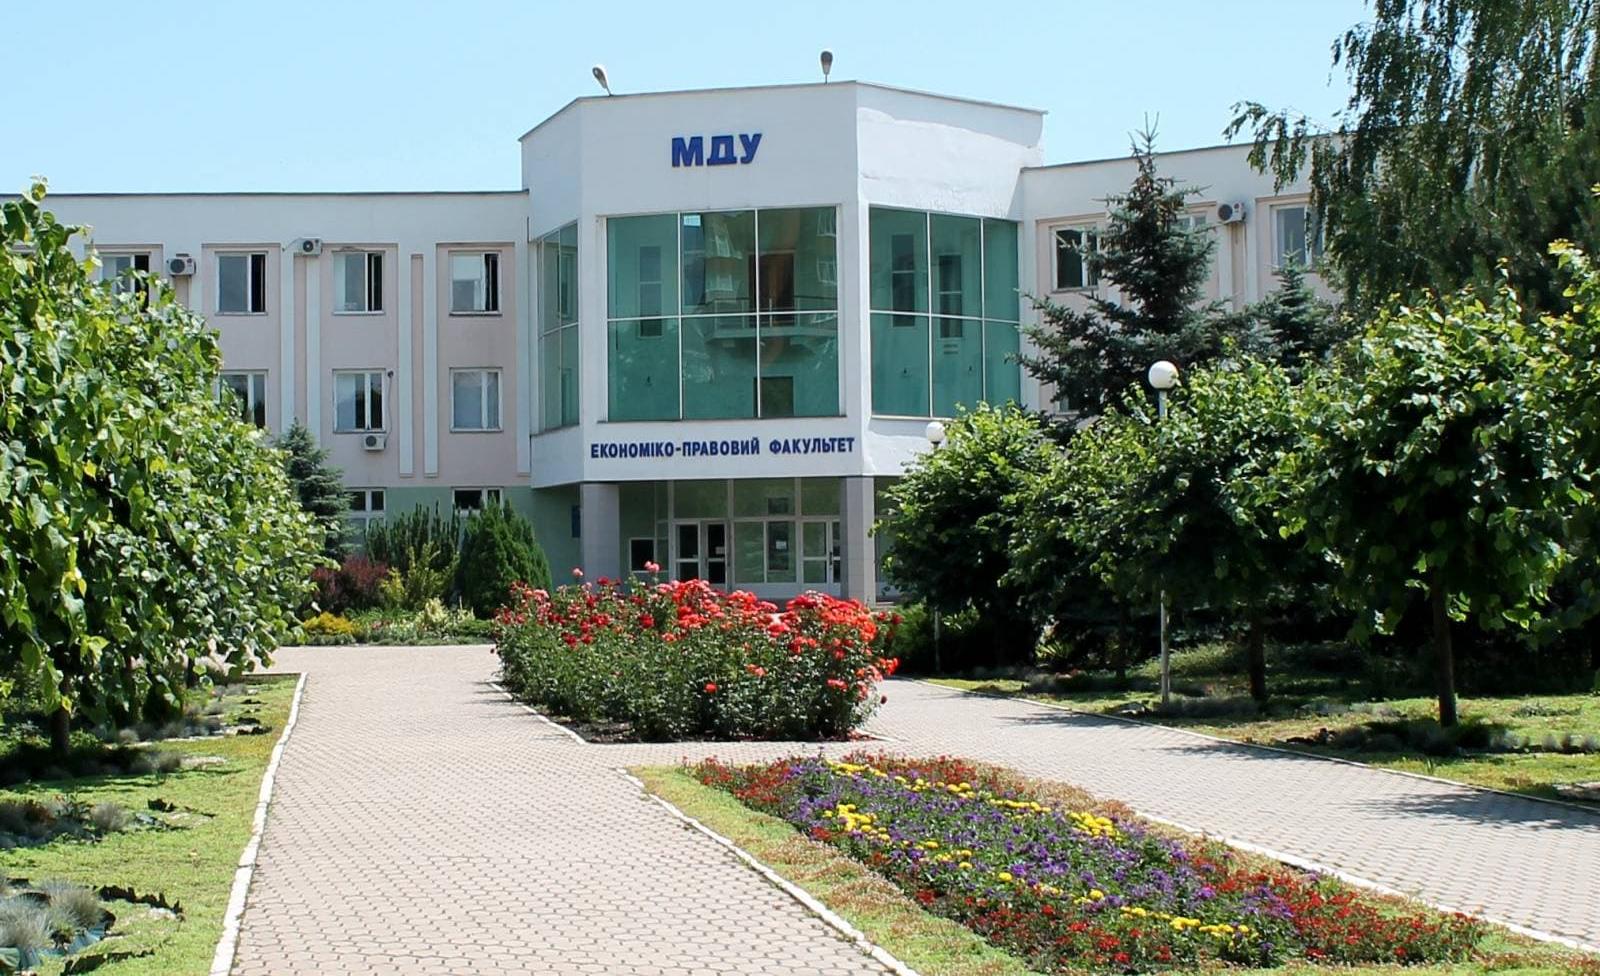 Mariupol State University